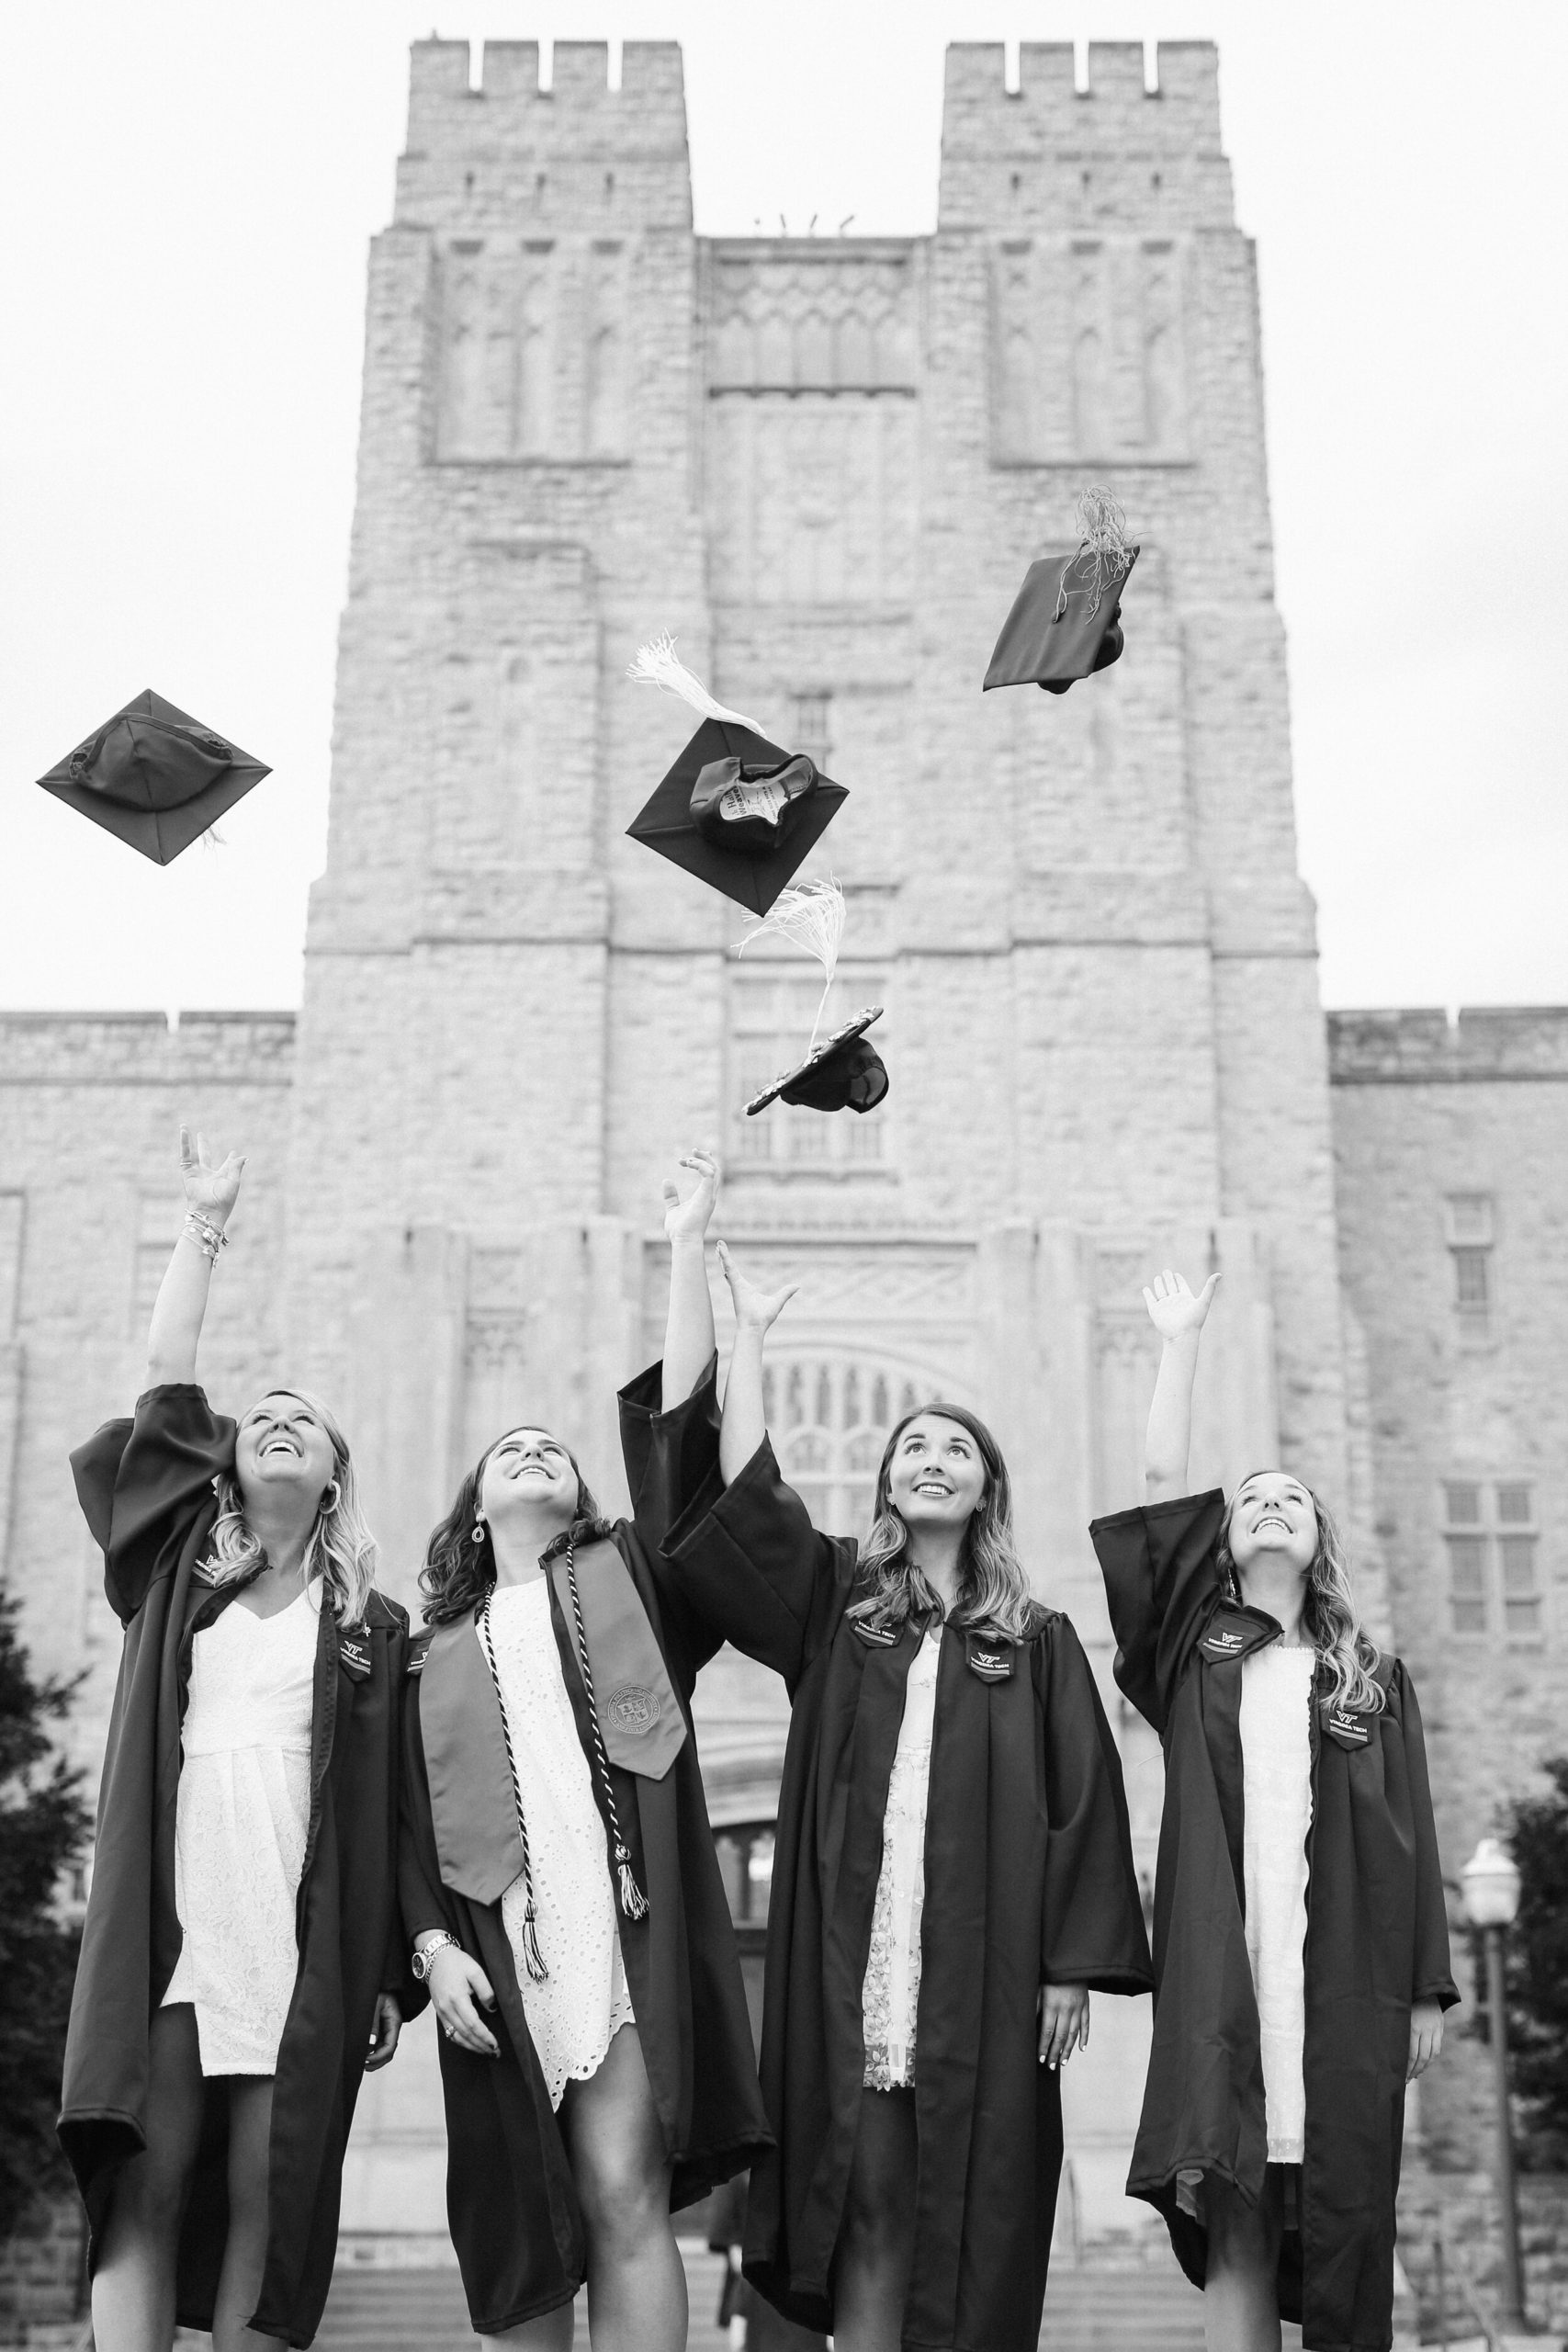 Group senior pictures for college graduates at Virginia Tech in Blacksburg, VA.